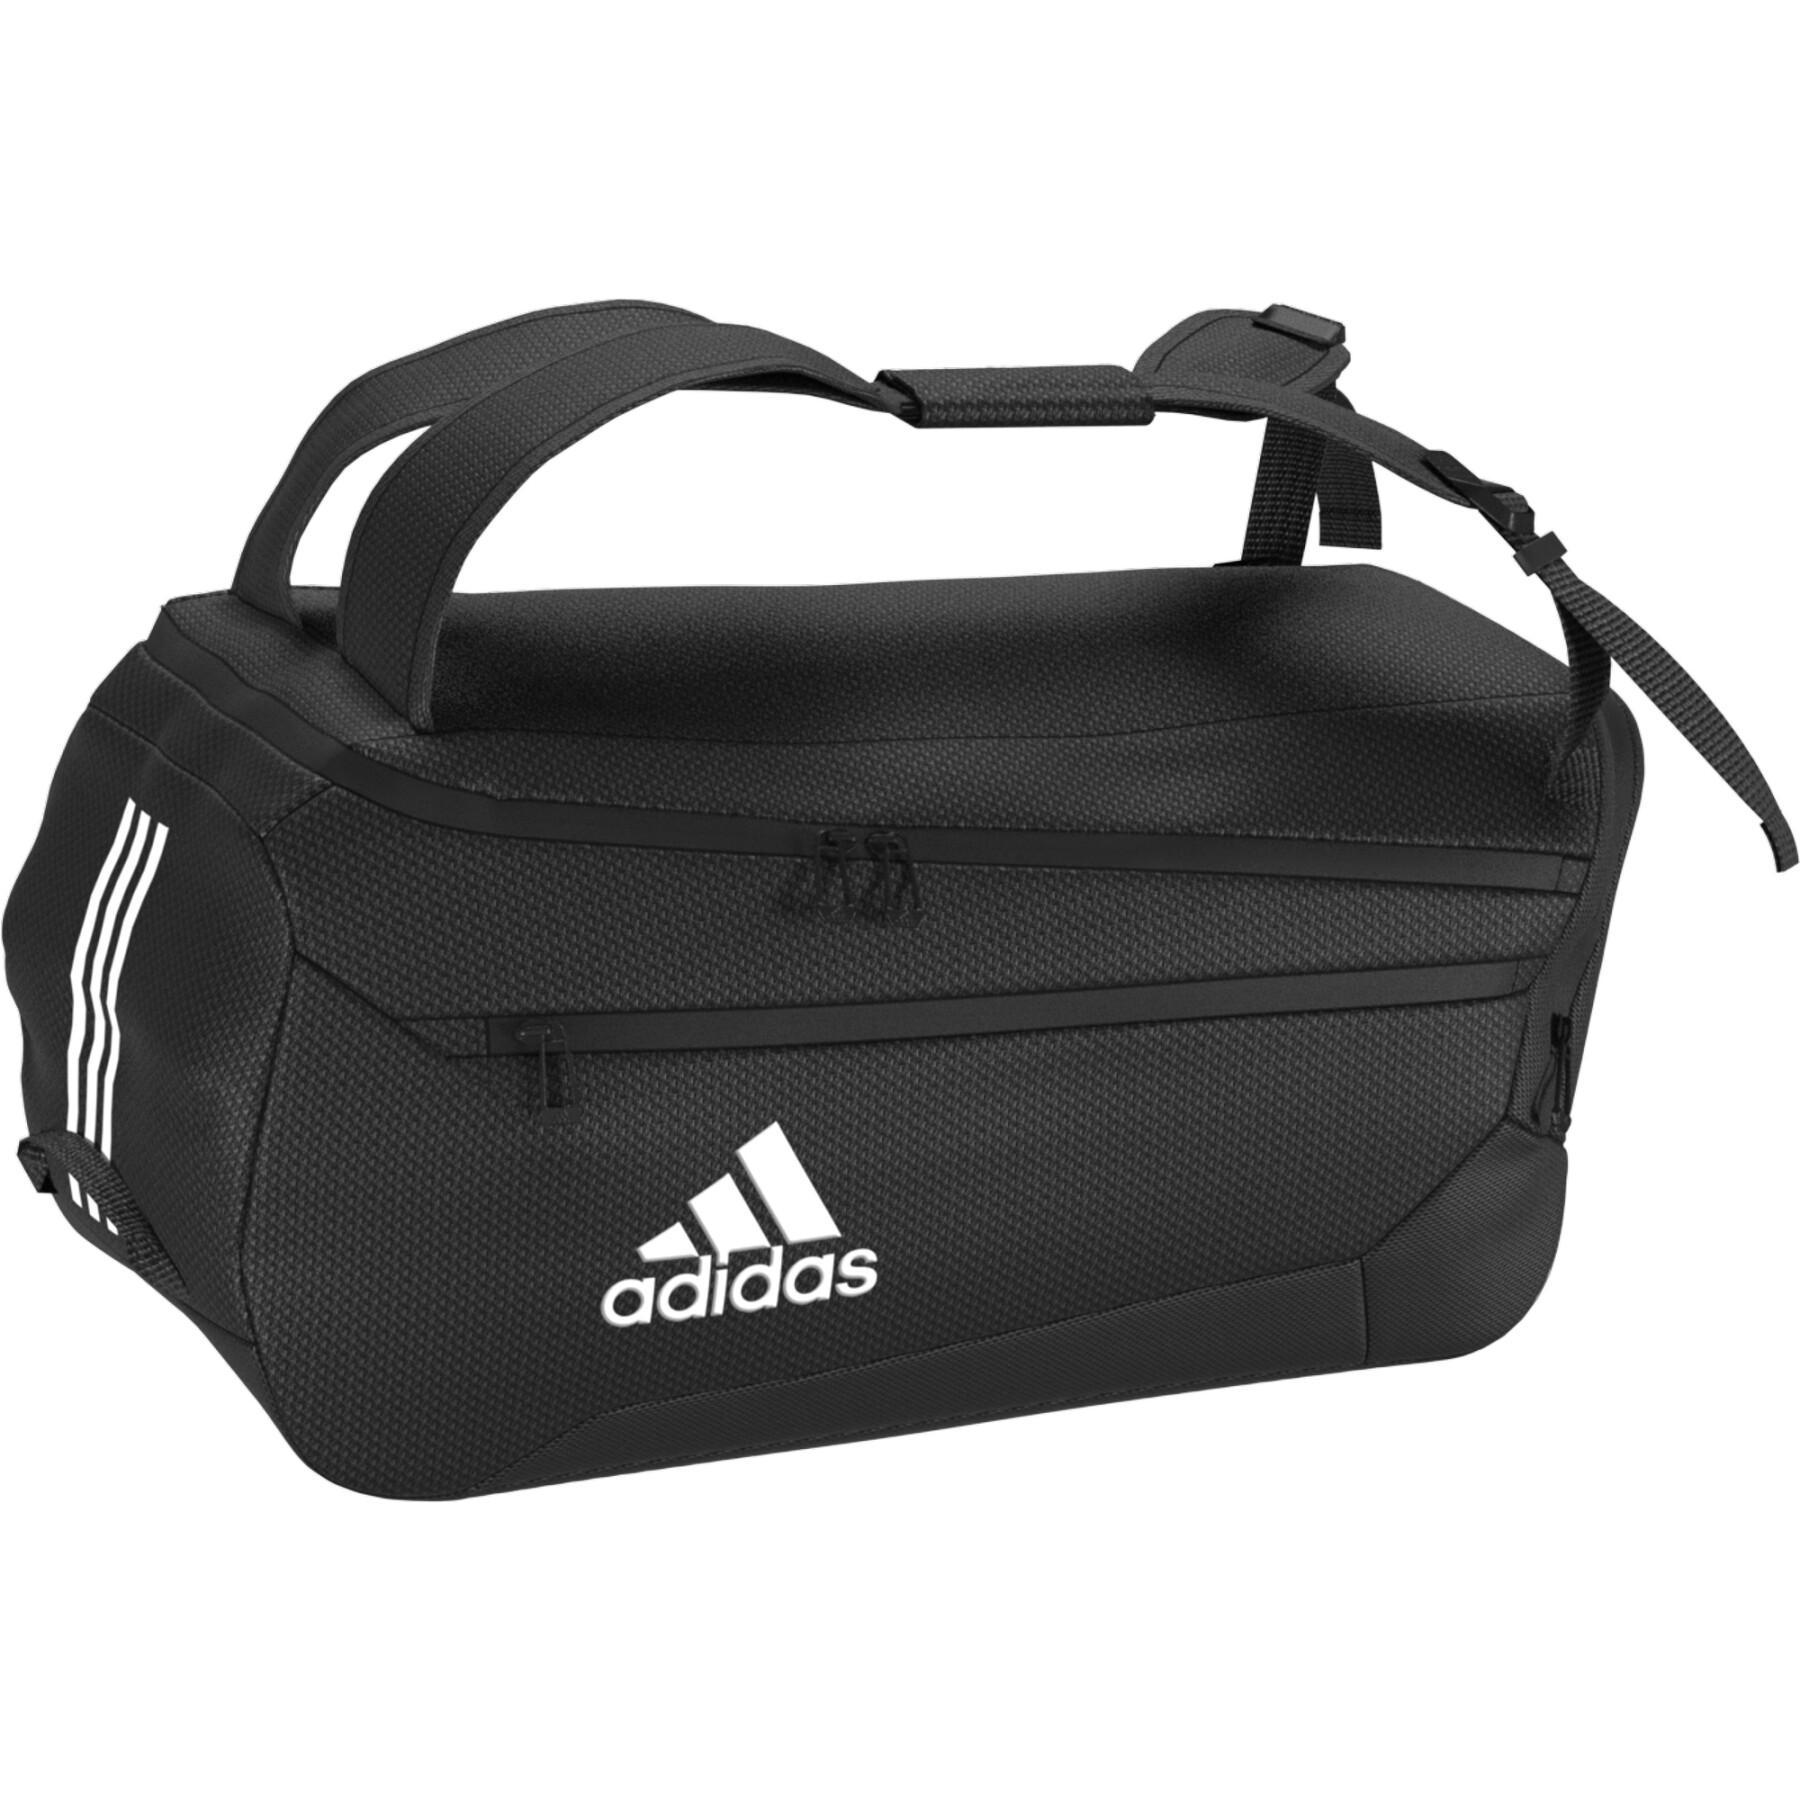 Sports bag adidas Ep/Syst. Duffel 35l